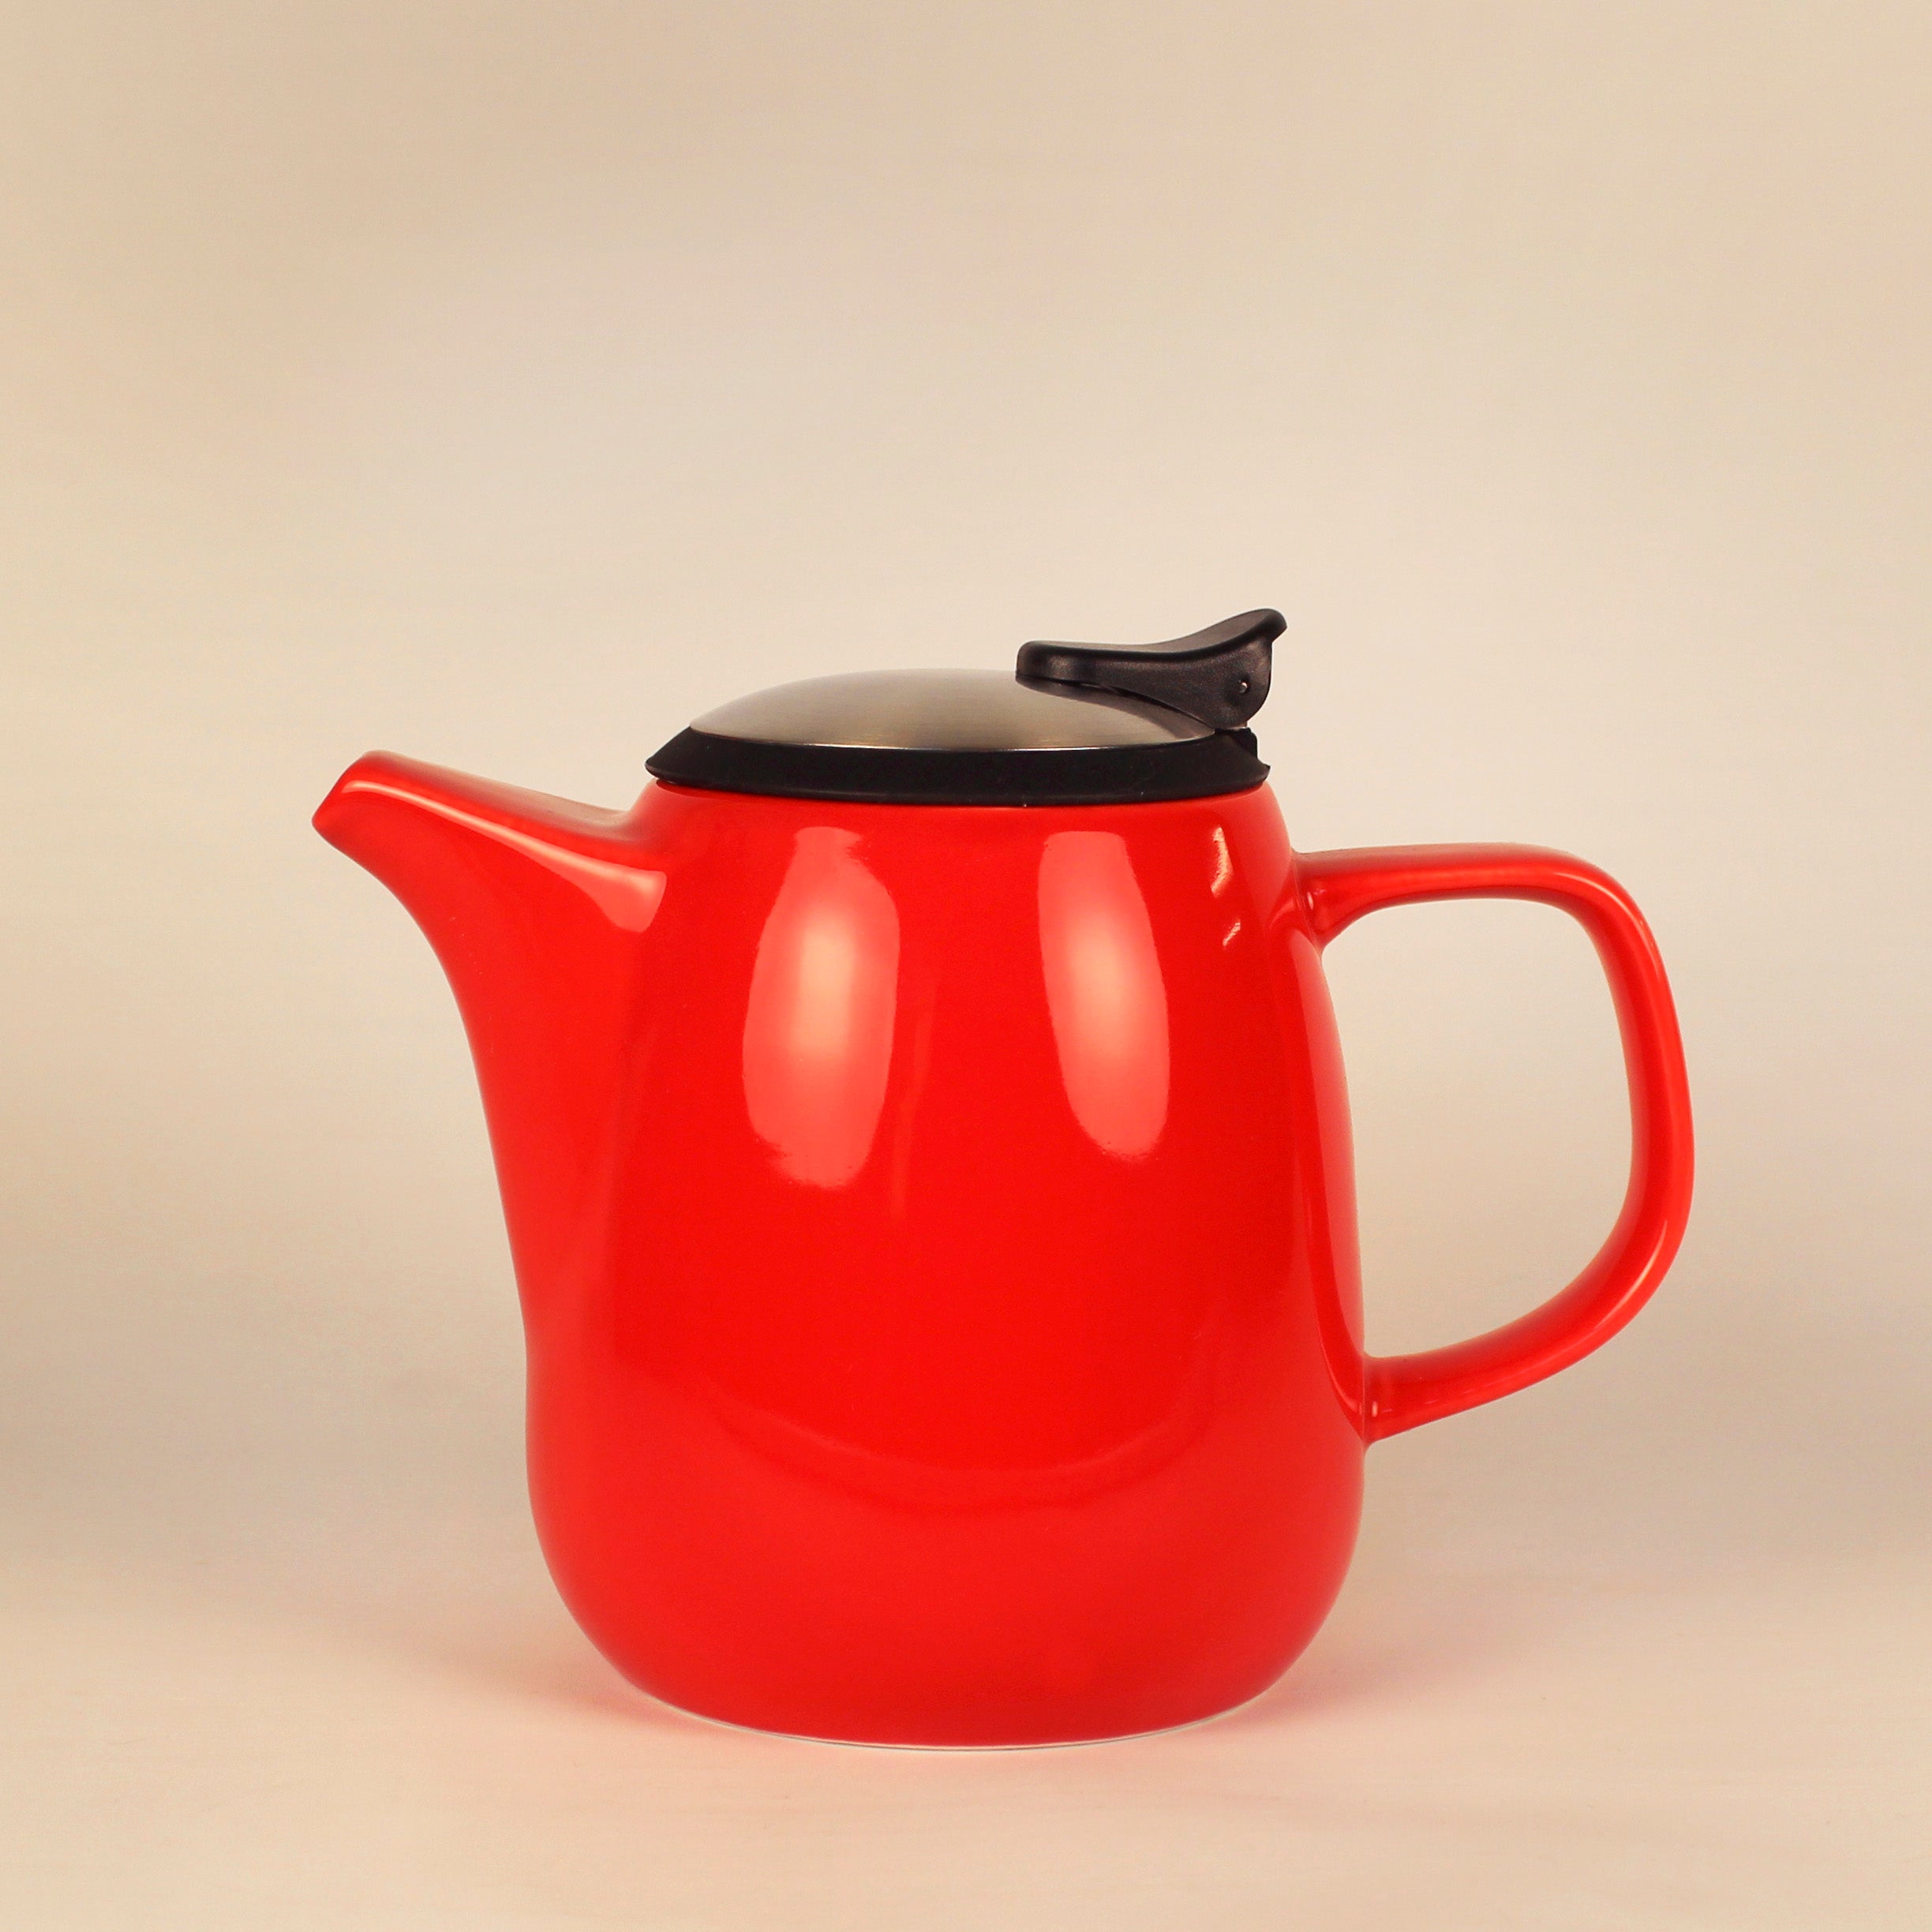 DAZE teapot 27oz ceramic